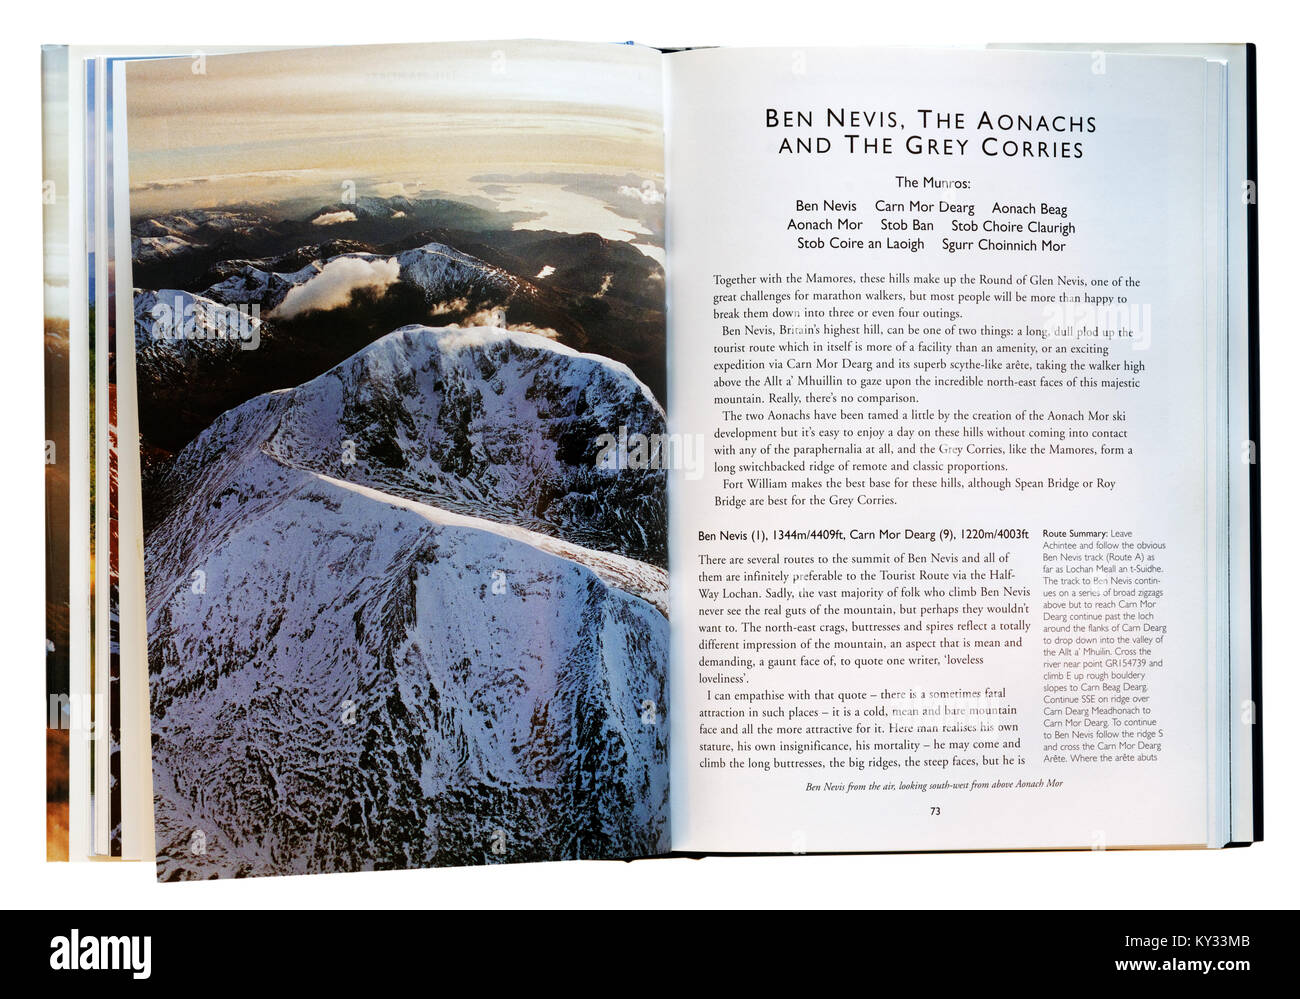 Guide pour la randonnée Highlands écossais, montrant la page pour le Ben Nevis Banque D'Images